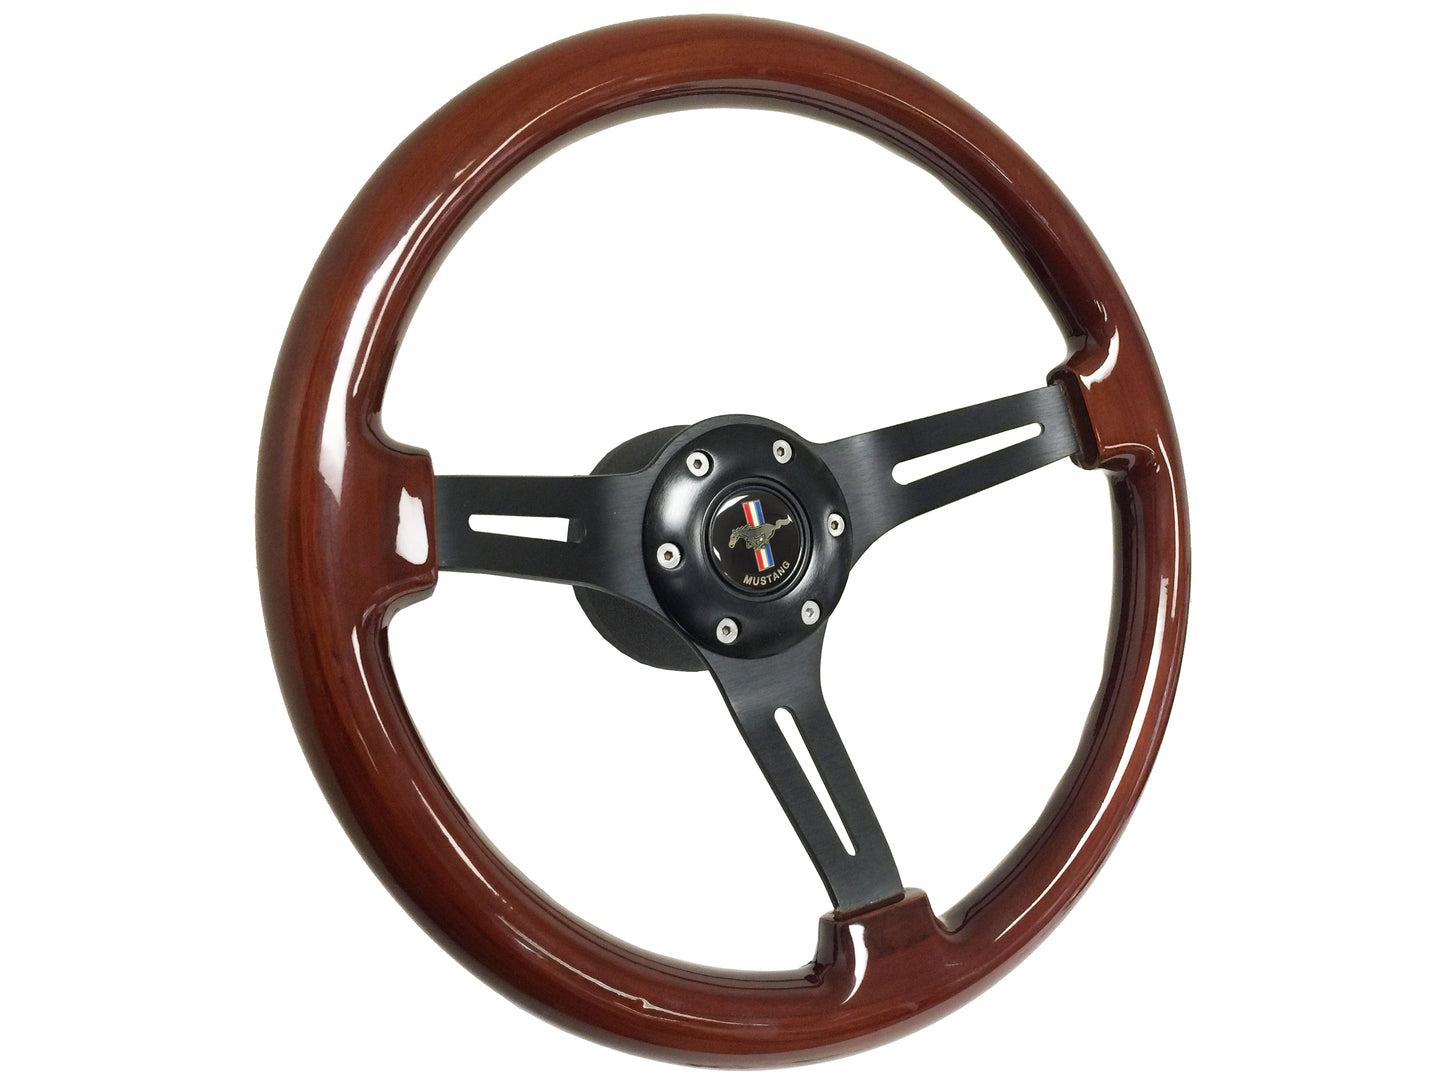 1964.5 Ford Mustang Steering Wheel Kit | Walnut Wood